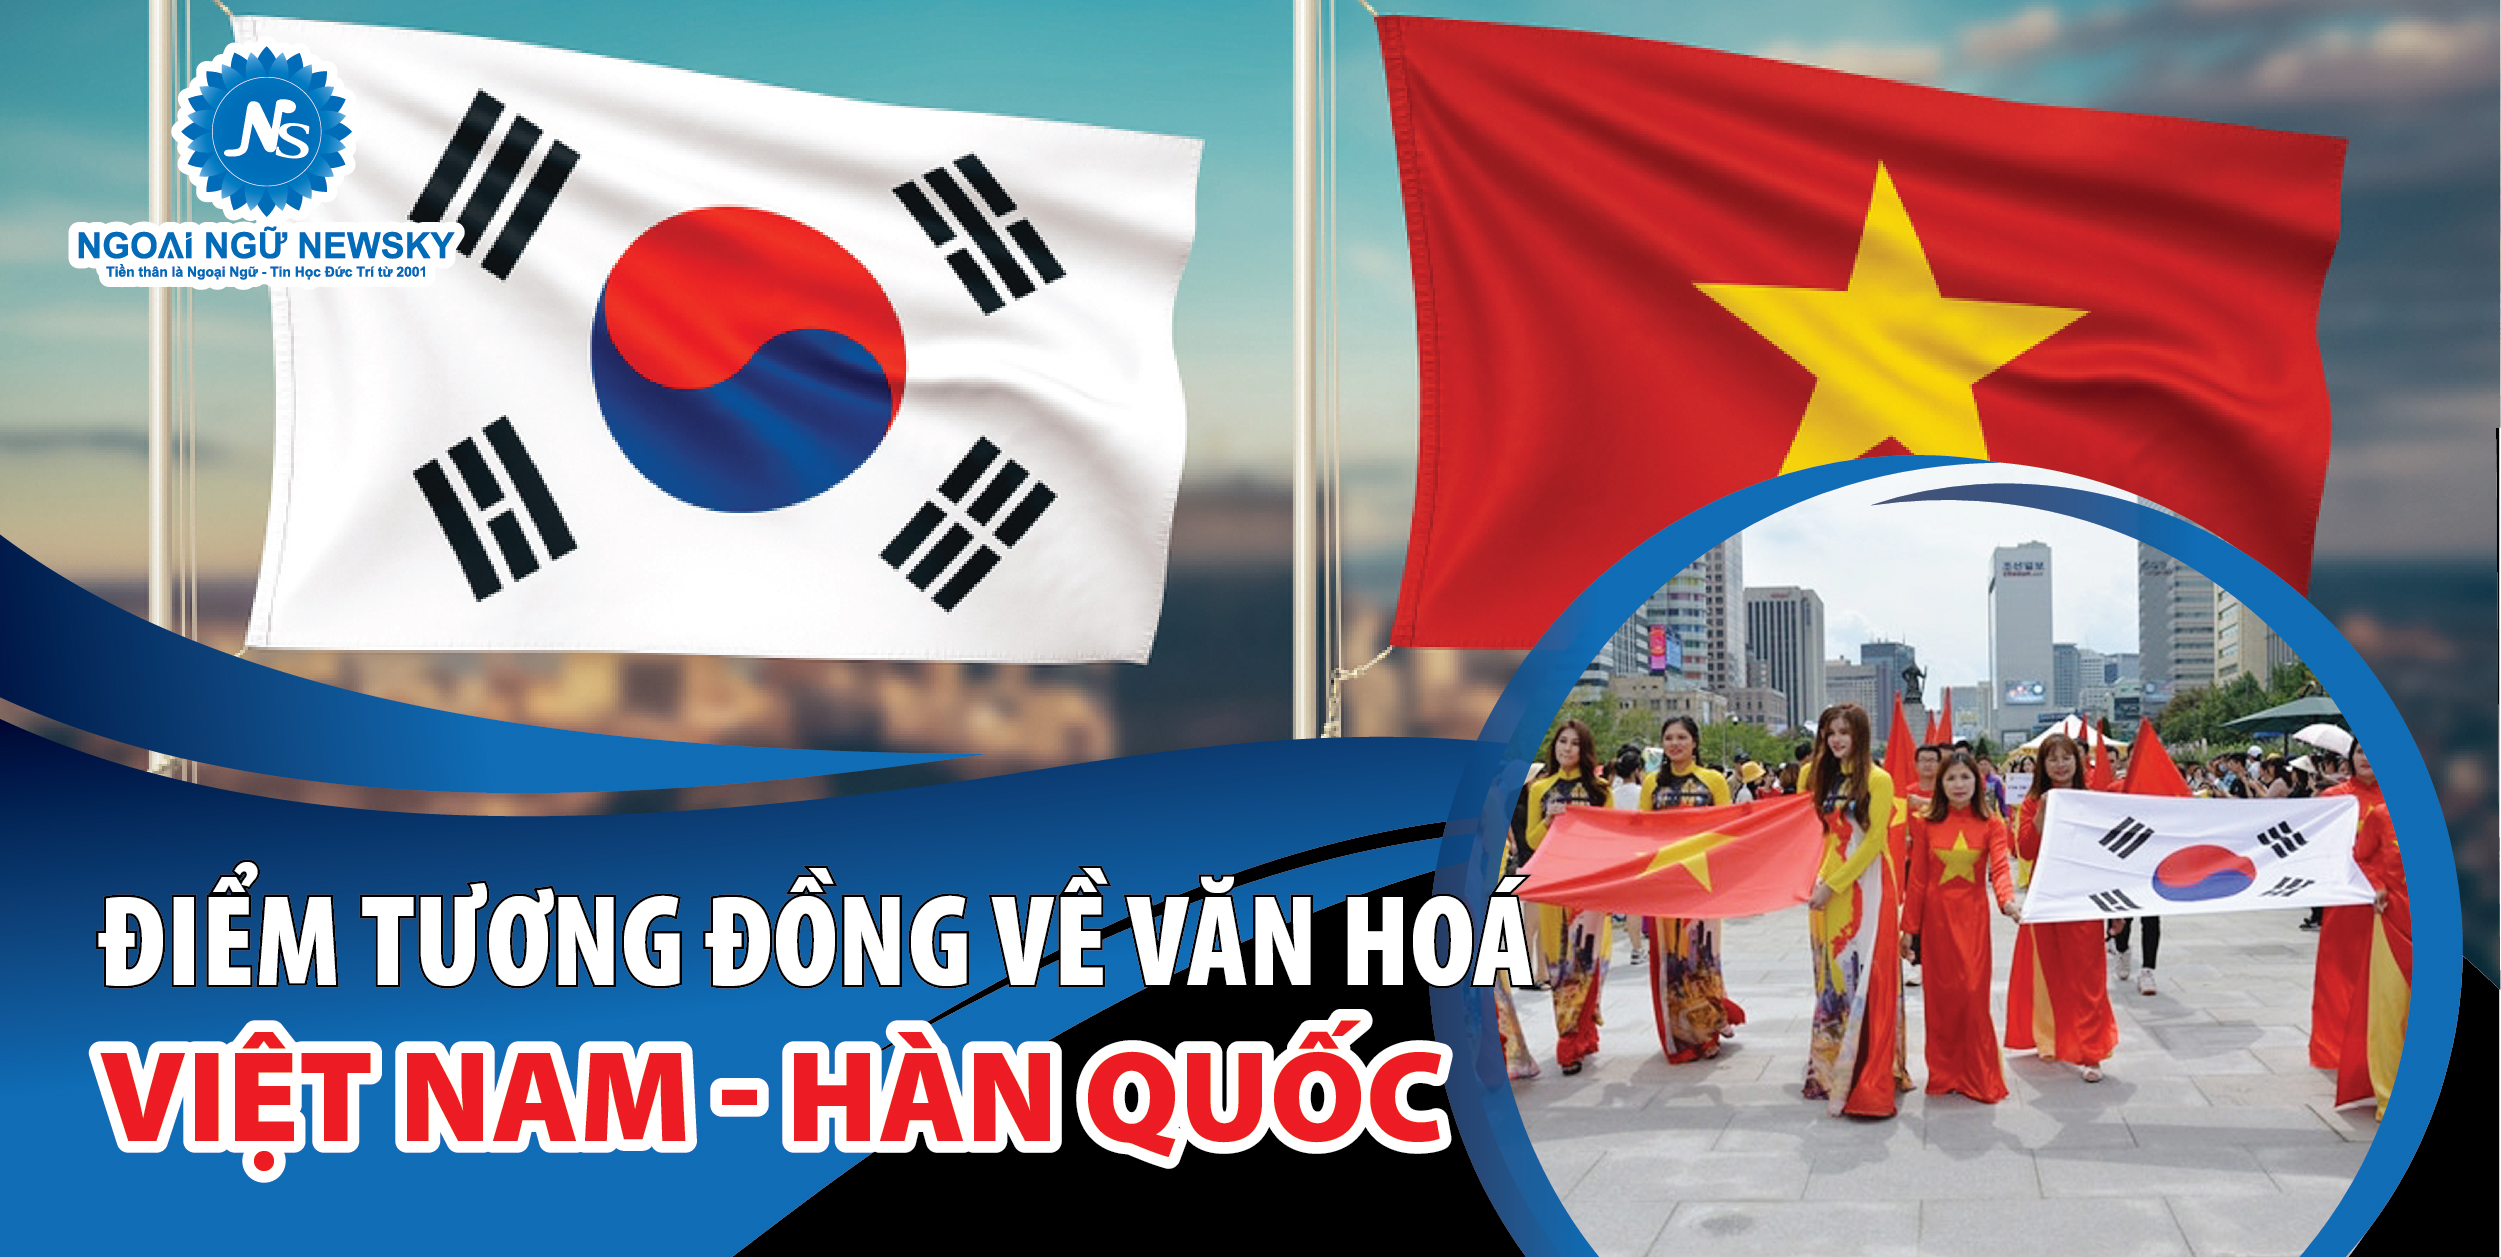 Năm 2024, văn hóa Việt Nam - Hàn Quốc sẽ tiếp tục được đẩy mạnh qua các hoạt động giao lưu văn hóa, trao đổi nghệ thuật, tạo cầu nối thân thiện giữa hai dân tộc. Việc hợp tác văn hóa giữa hai quốc gia sẽ mở ra nhiều cơ hội cho các nghệ sĩ, nhà văn, nhạc sĩ trẻ của Việt Nam để tham gia những dự án đa phương tiện và quốc tế, đồng thời giới thiệu văn hóa Việt Nam đến thế giới.